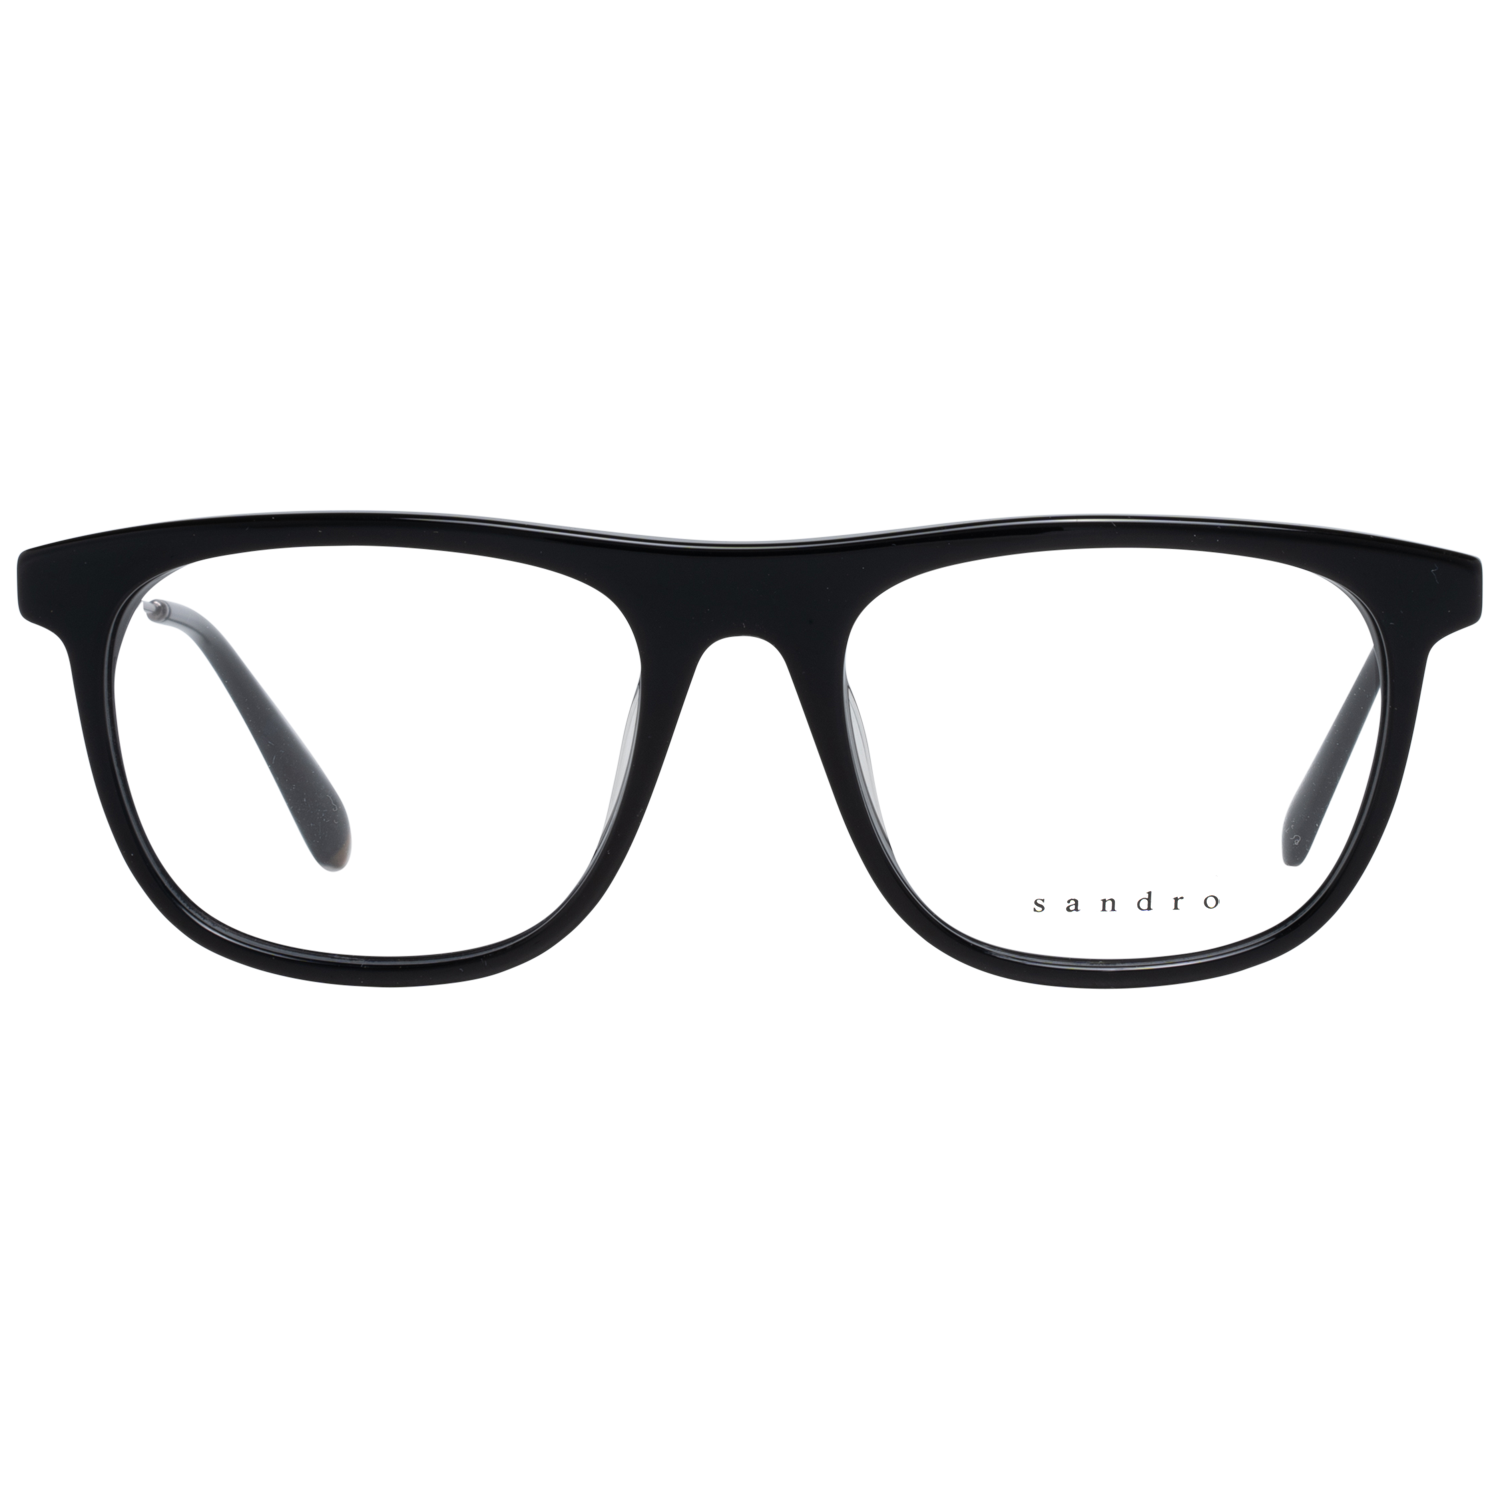 Sandro Frames Sandro Optical Frame SD1019 001 54 Eyeglasses Eyewear UK USA Australia 